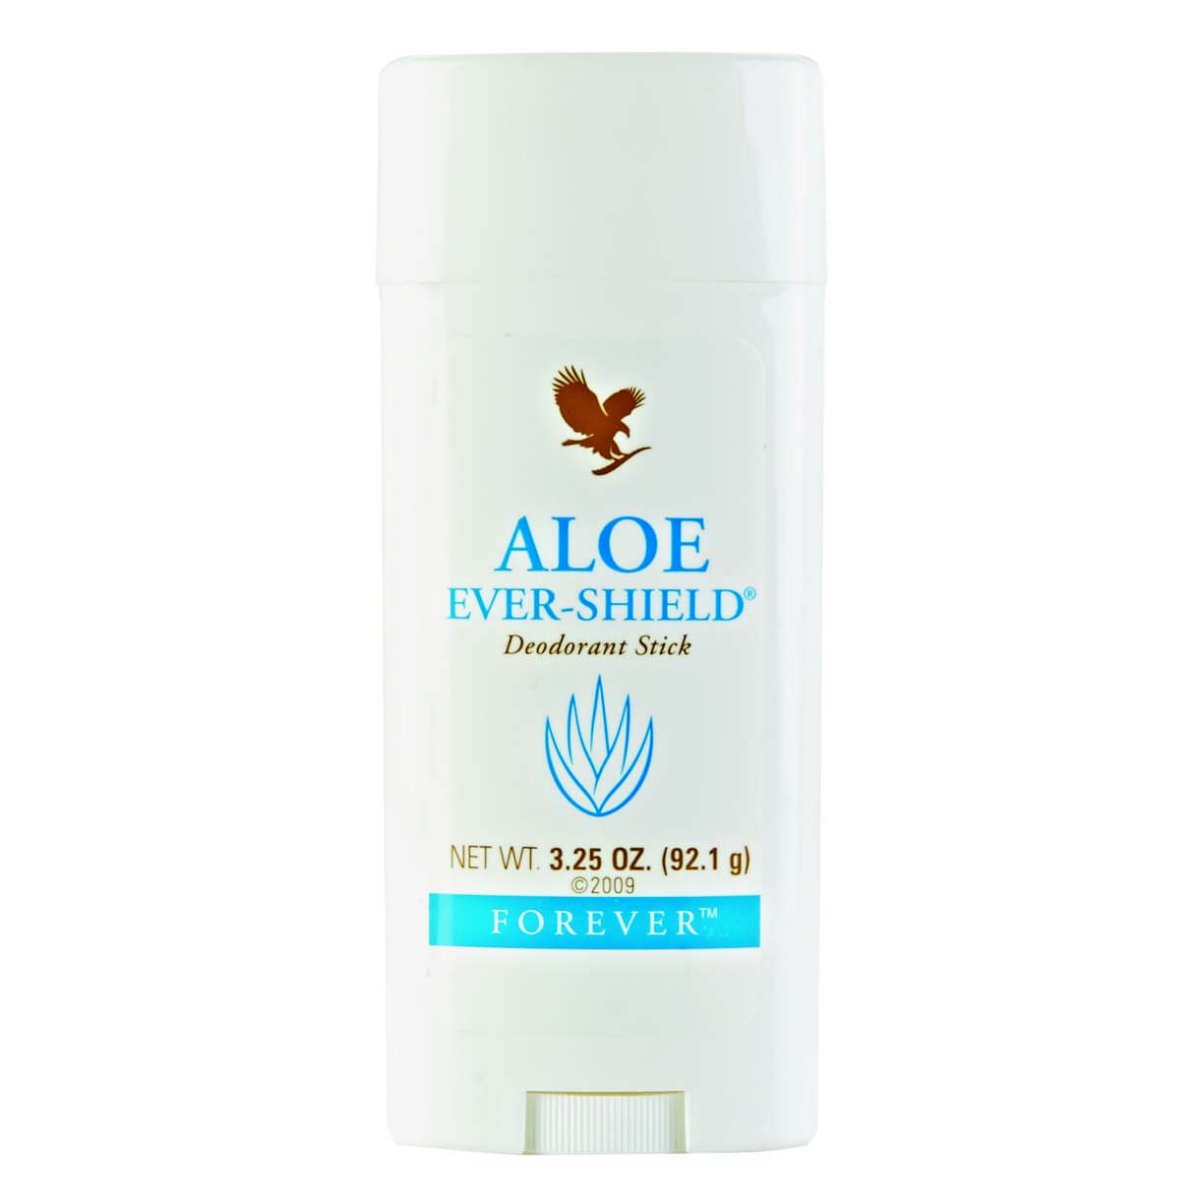 Deodorant virker effektivt - Aloe Ever-Shield - Køb nu!